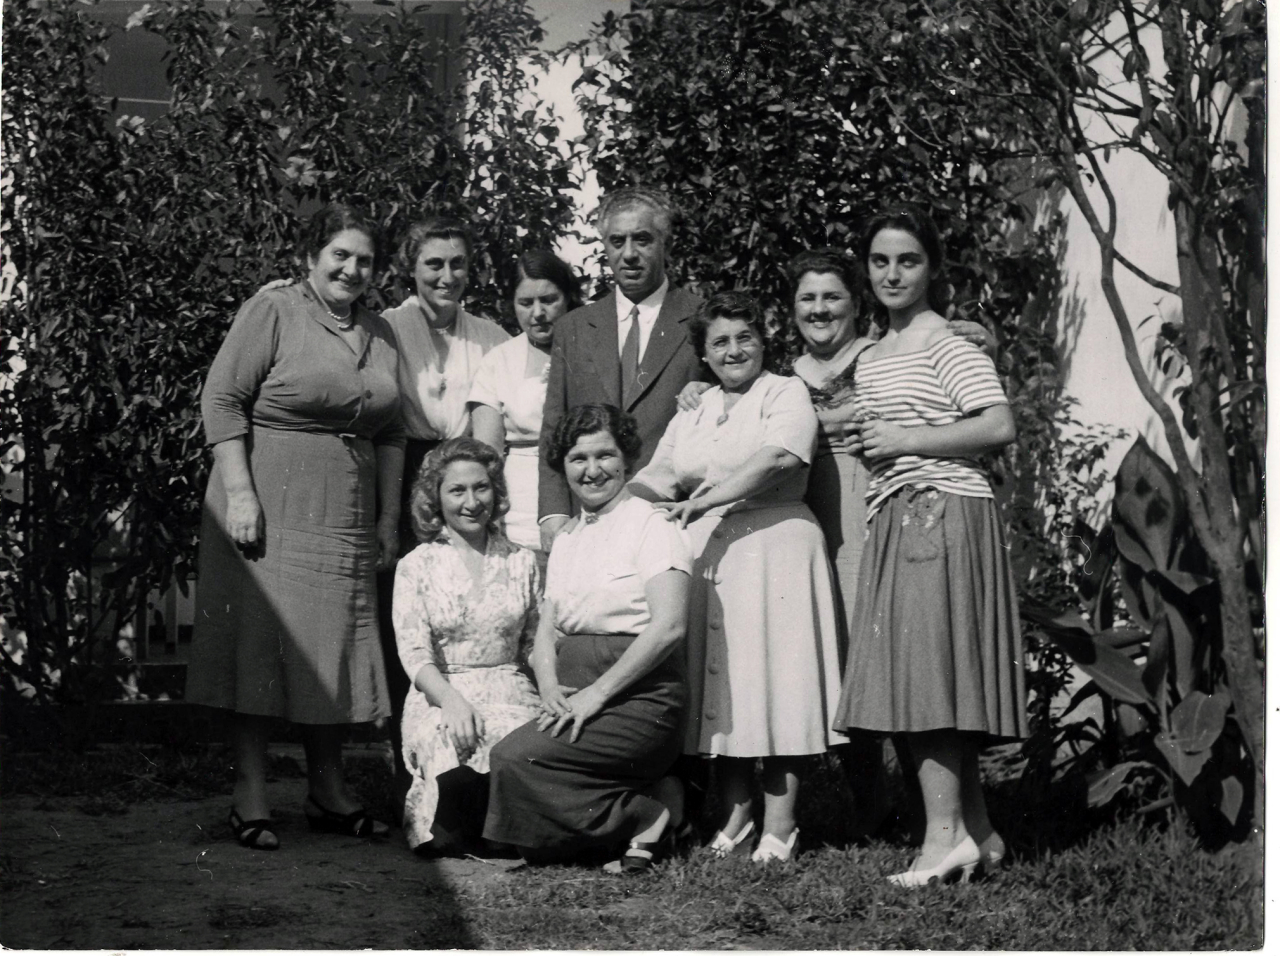 Լուսանկար. Ա. Խաչատրյանը կնոջ՝ Ն. Մակարովայի և այլոց հետ Տ. Մոստիջյանի տան պարտեզում